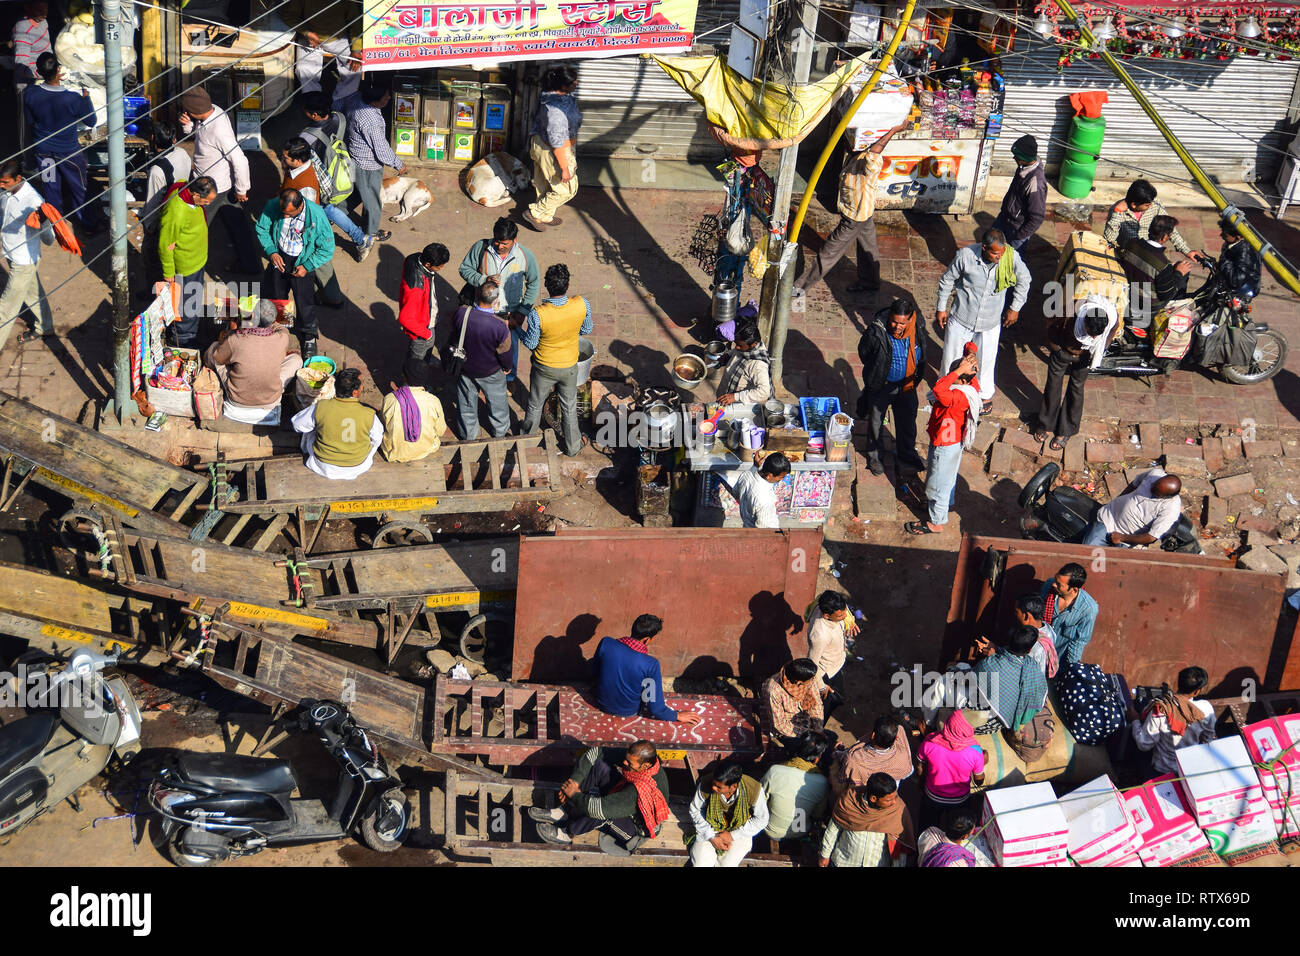 Dachterrasse mit Blick auf khari Baoli, belebten Indischen Großhandel Spice Market, Old Delhi, Indien Stockfoto